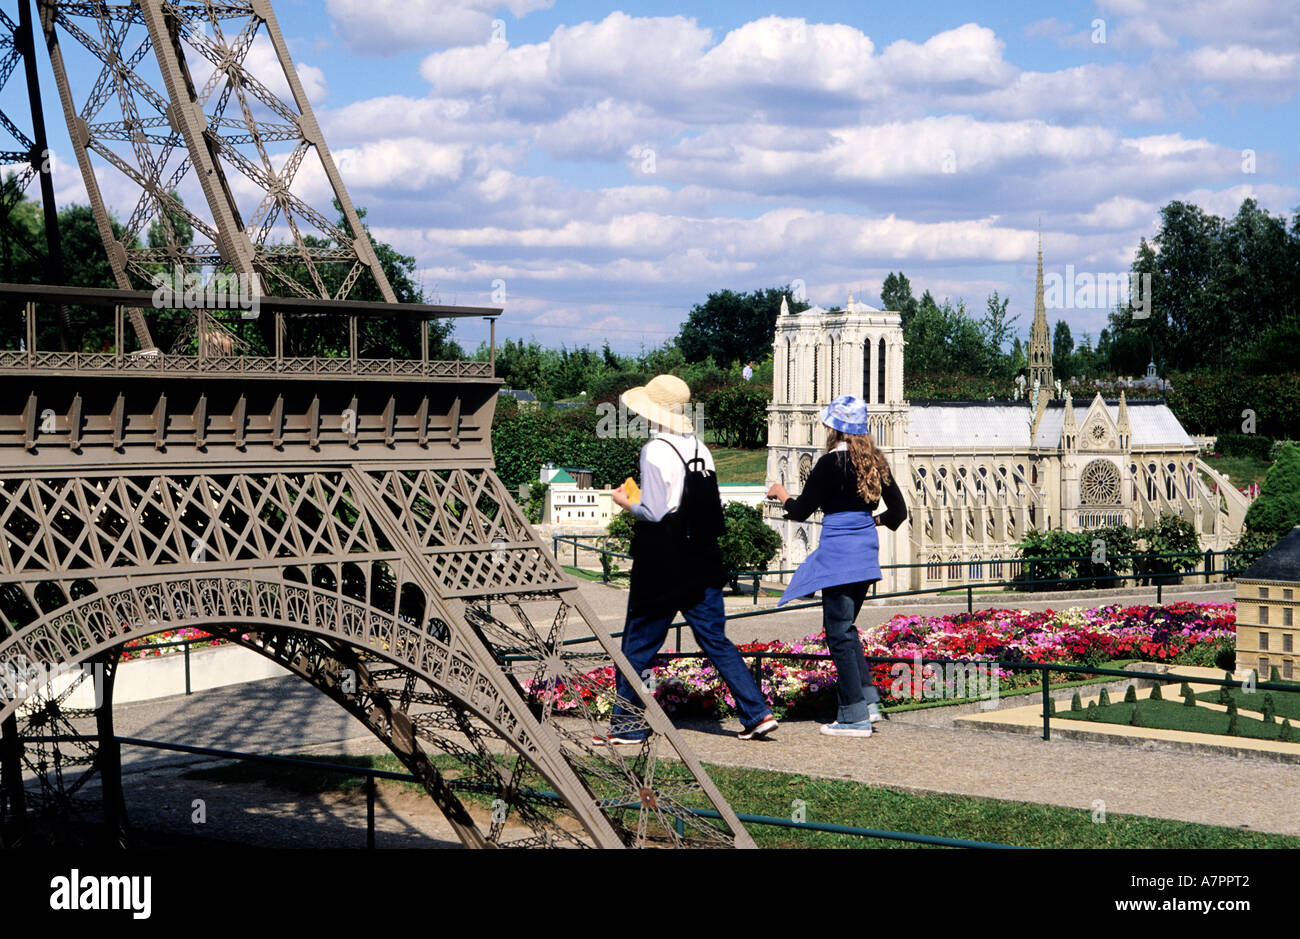 France, Yvelines, Elancourt, France Miniature leisure park Stock Photo -  Alamy